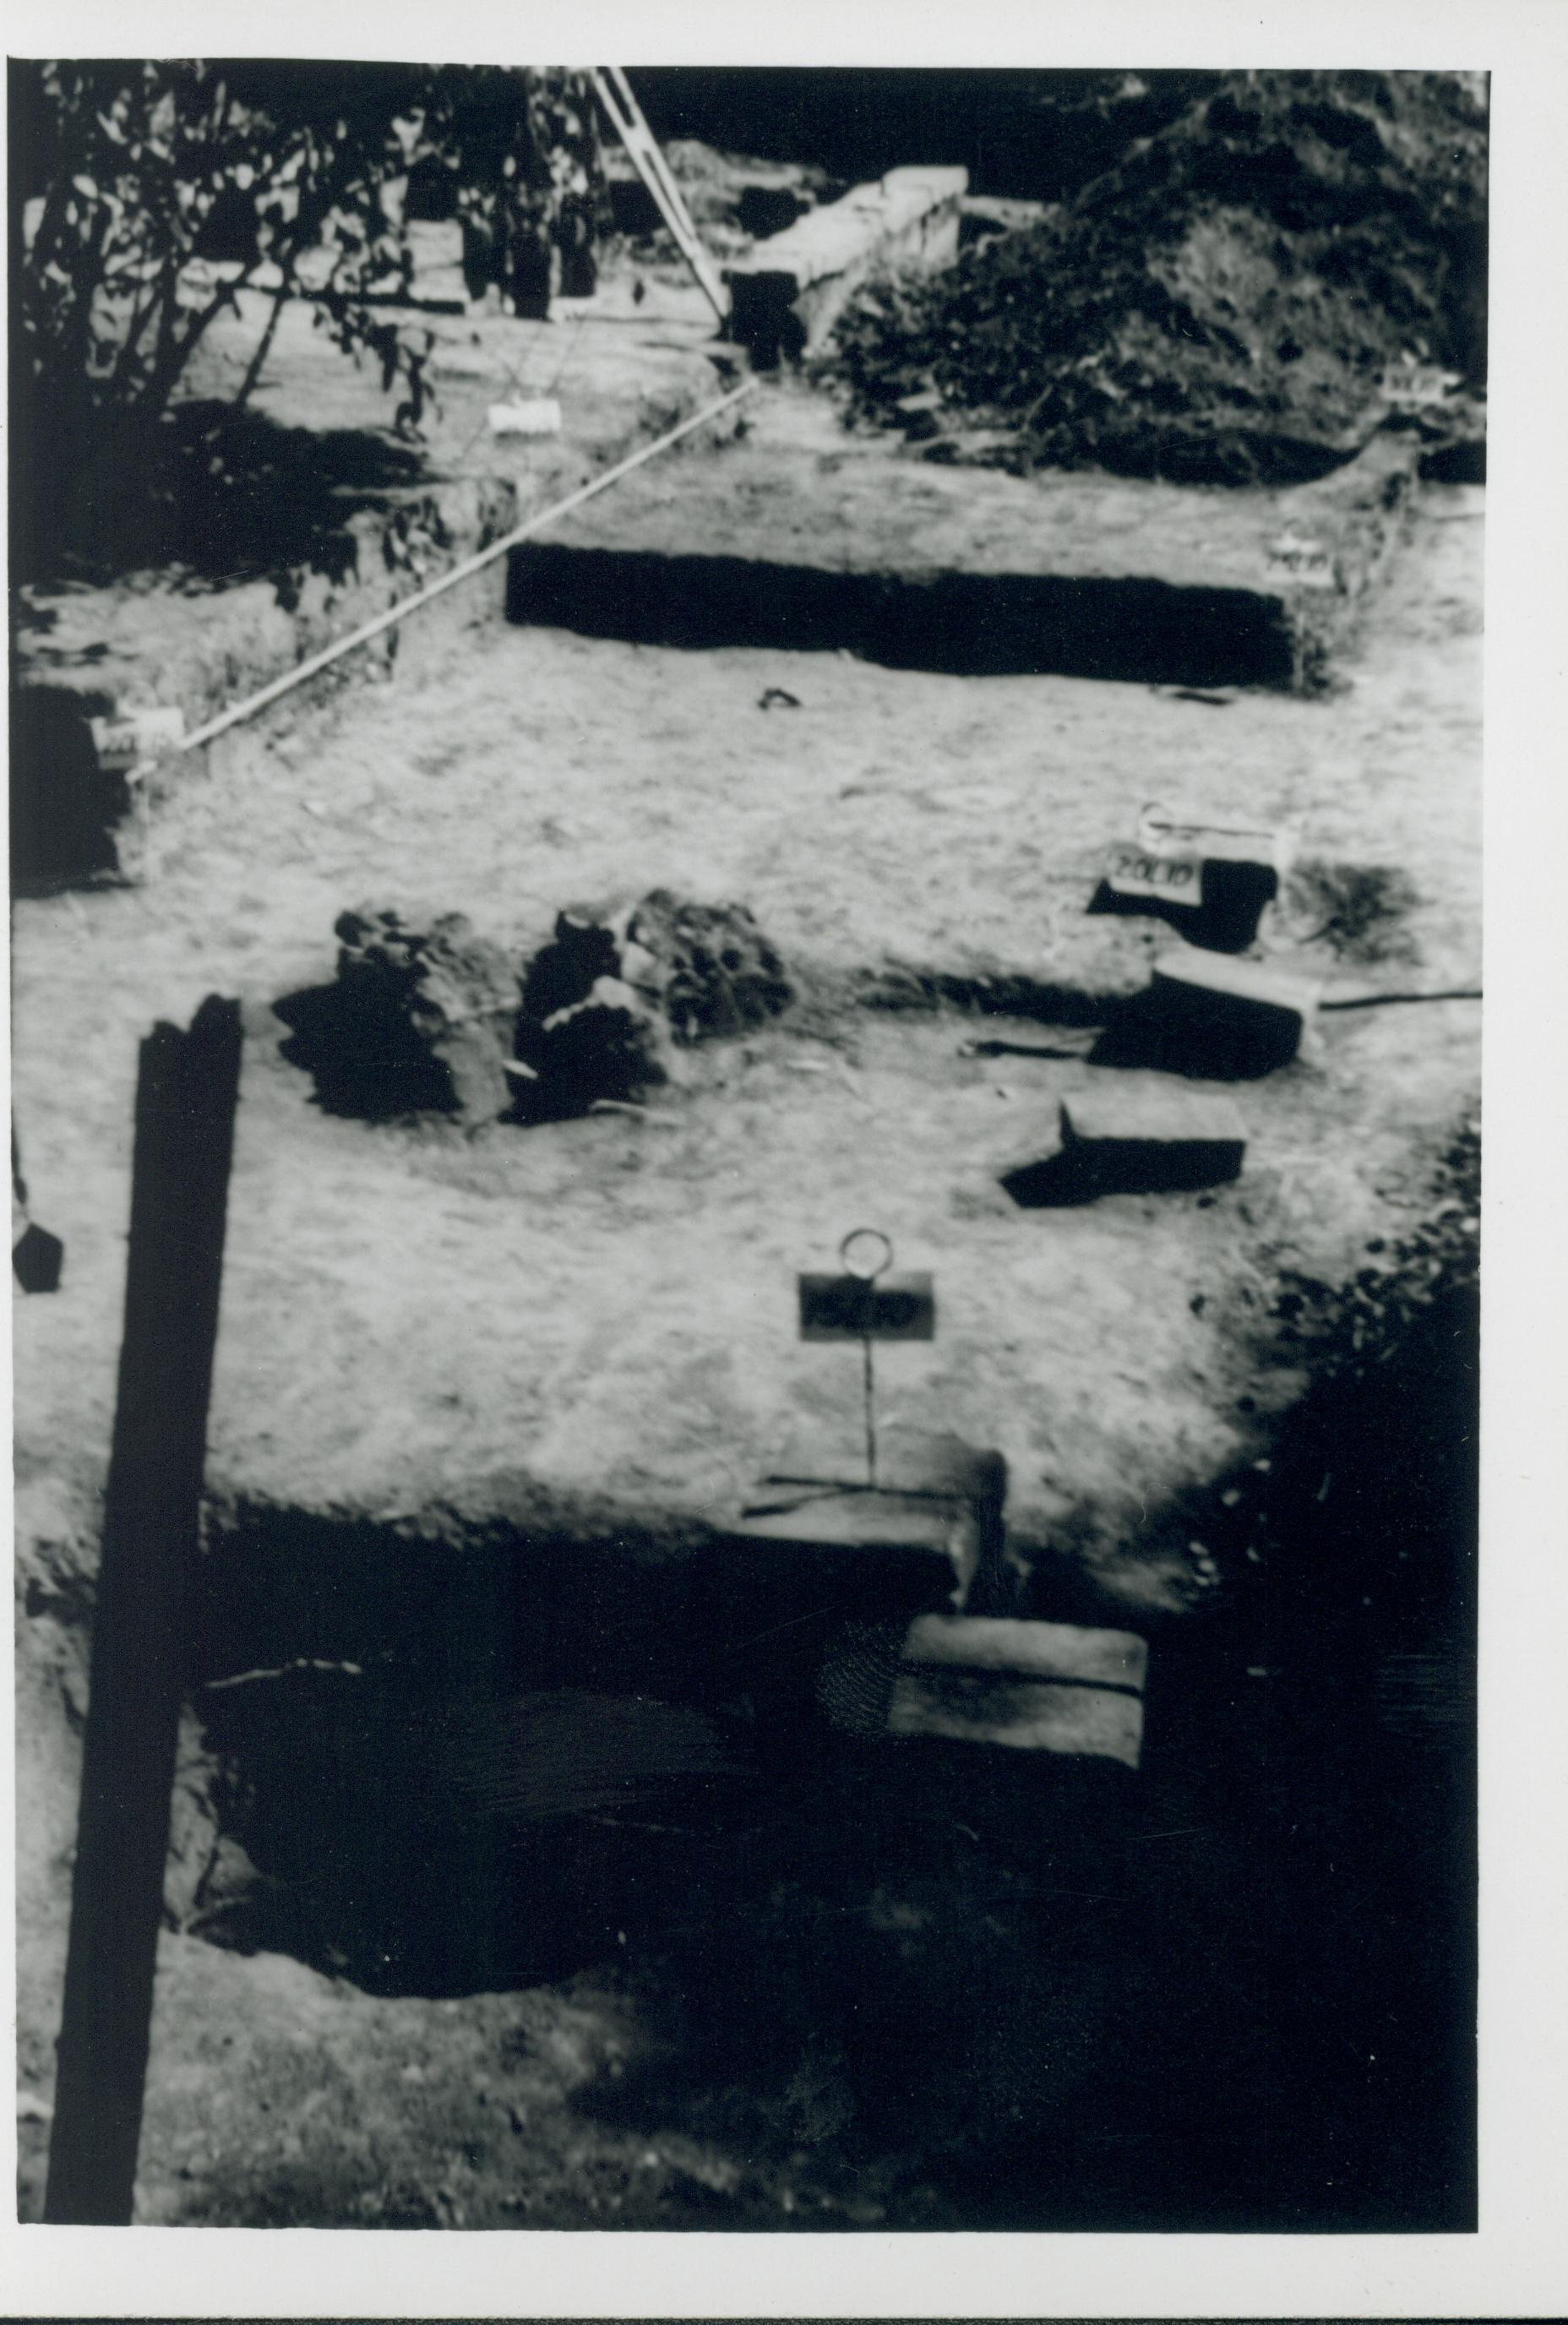 Richard Hagen 1950 - Archaeological excavation of Lincoln backyard Lincoln, Home, excavation, archaeology, Hagen